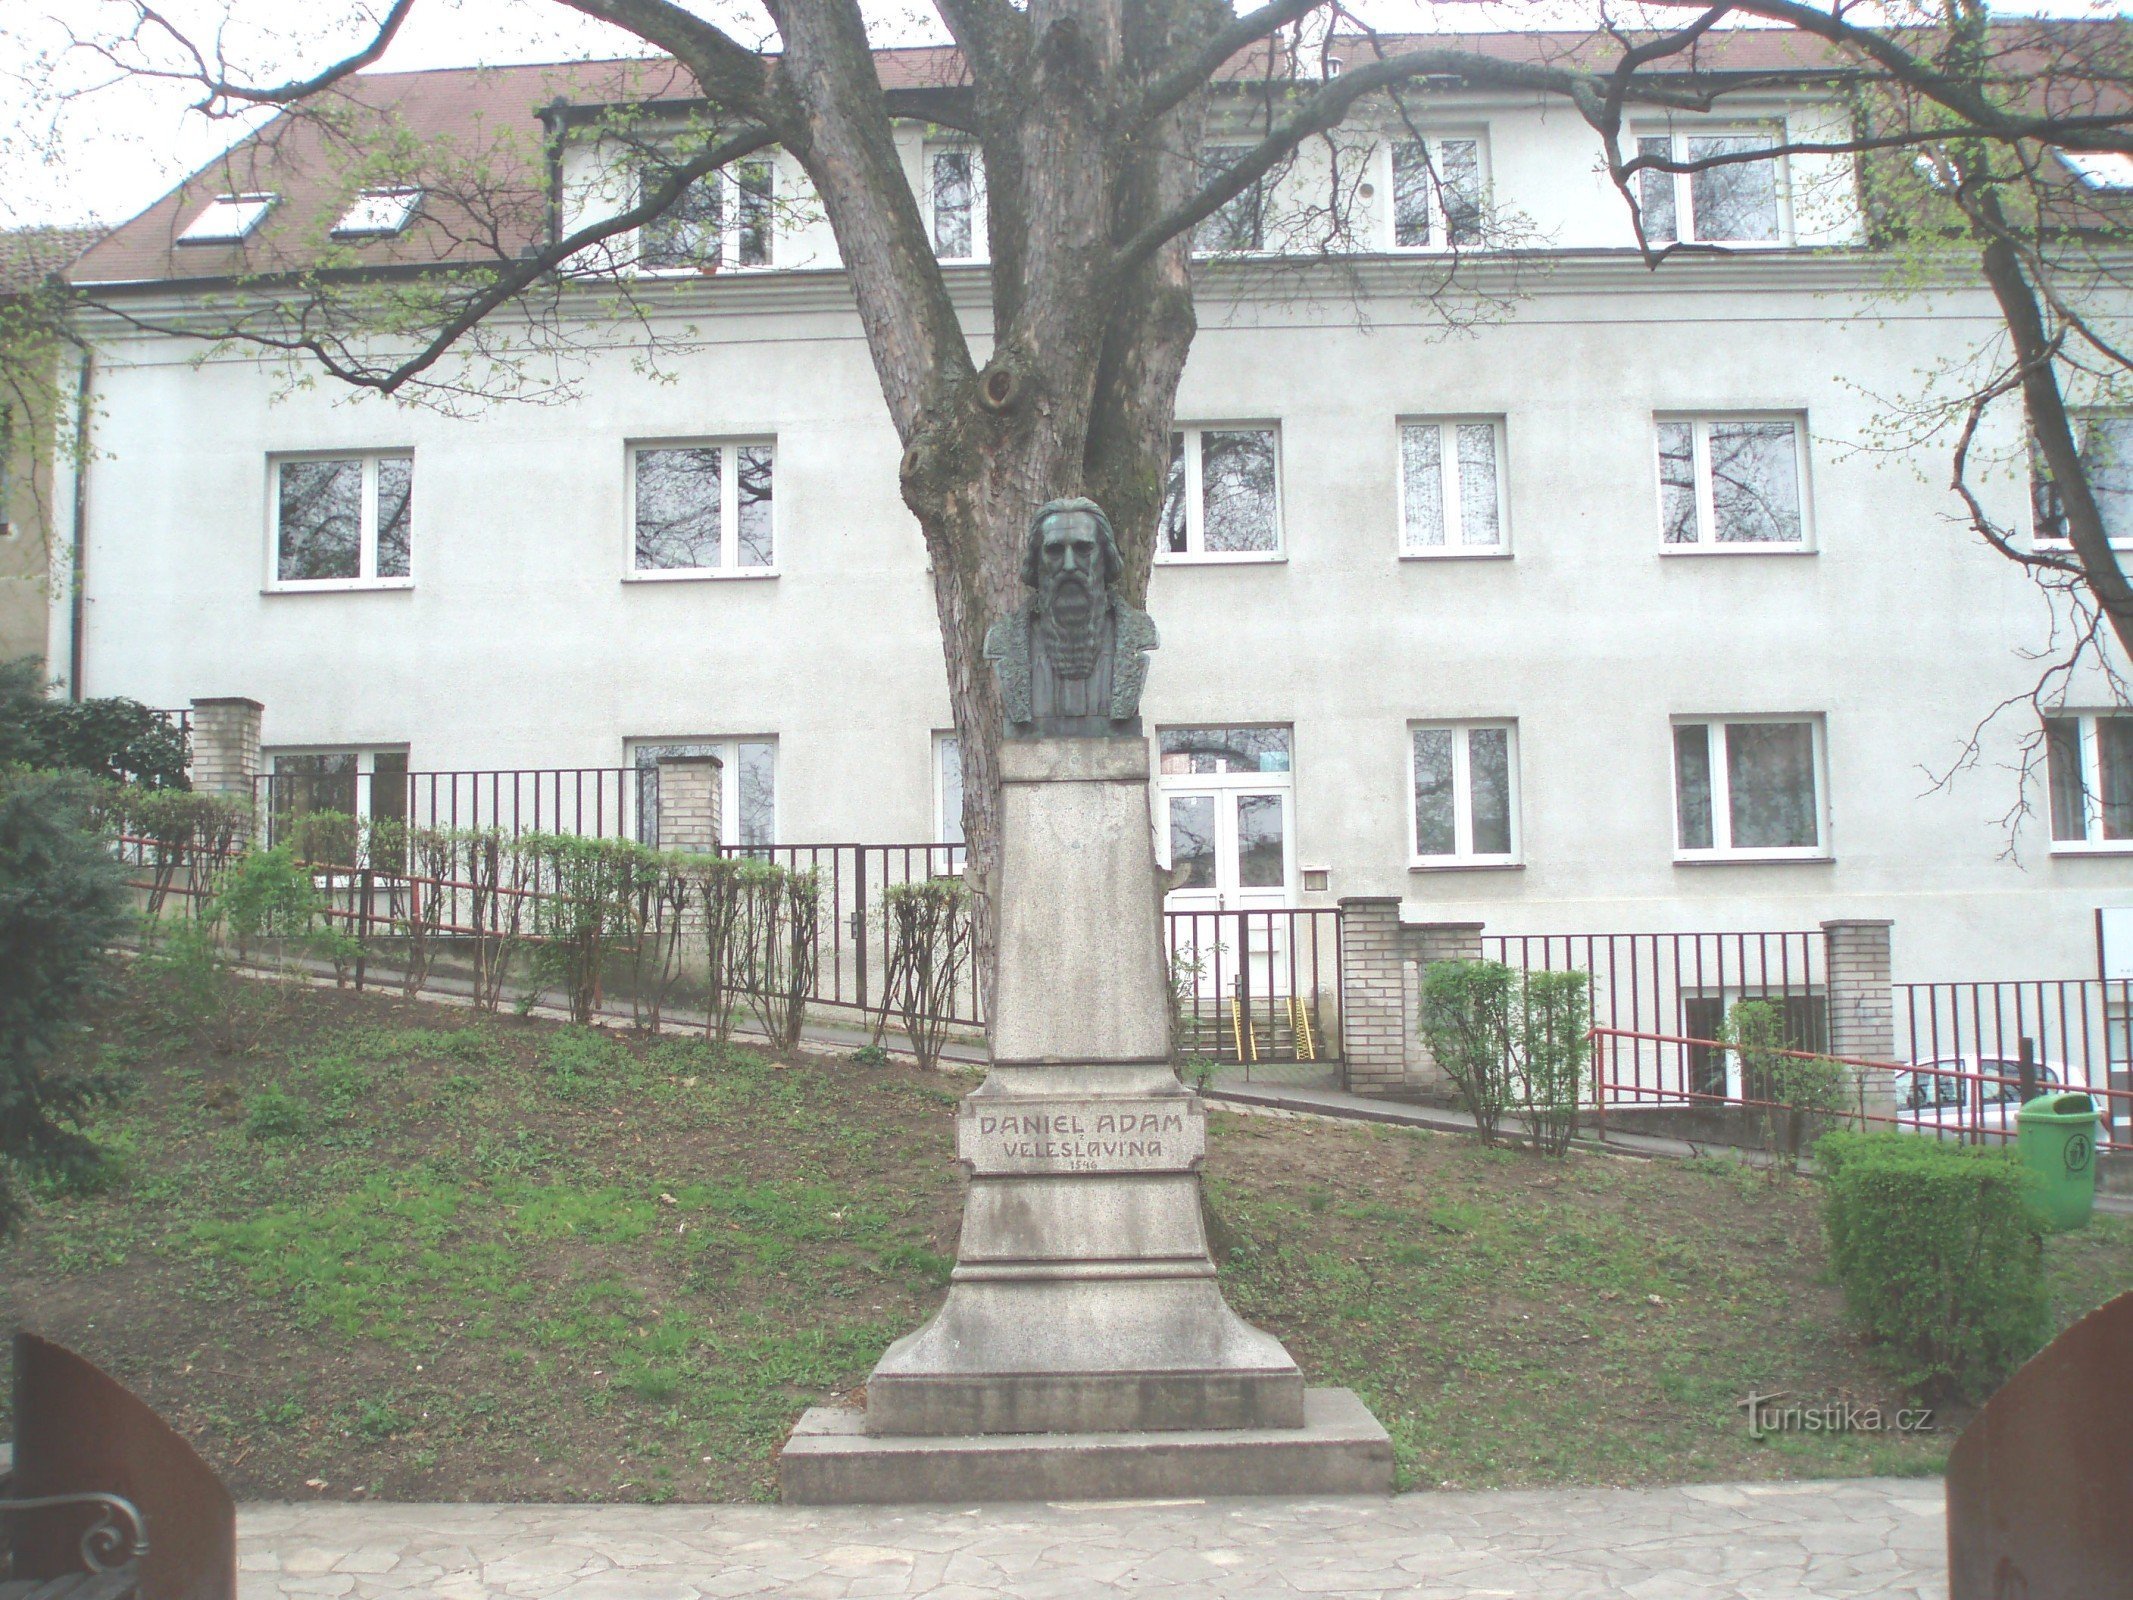 Памятник Даниэлю Адаму из Велеславина